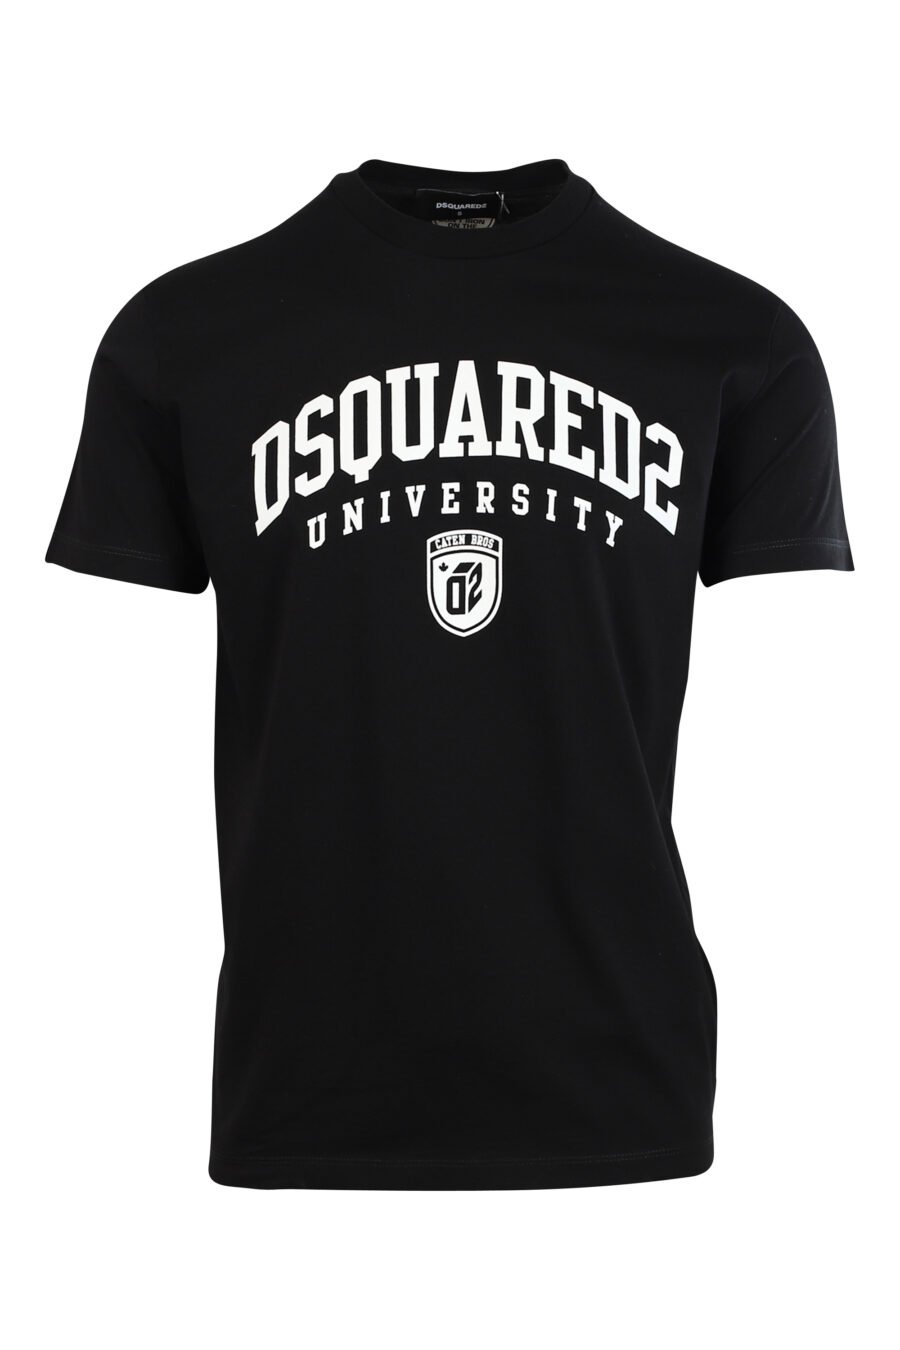 T-shirt preta com maxilogo "universidade" branco - 8052134945810